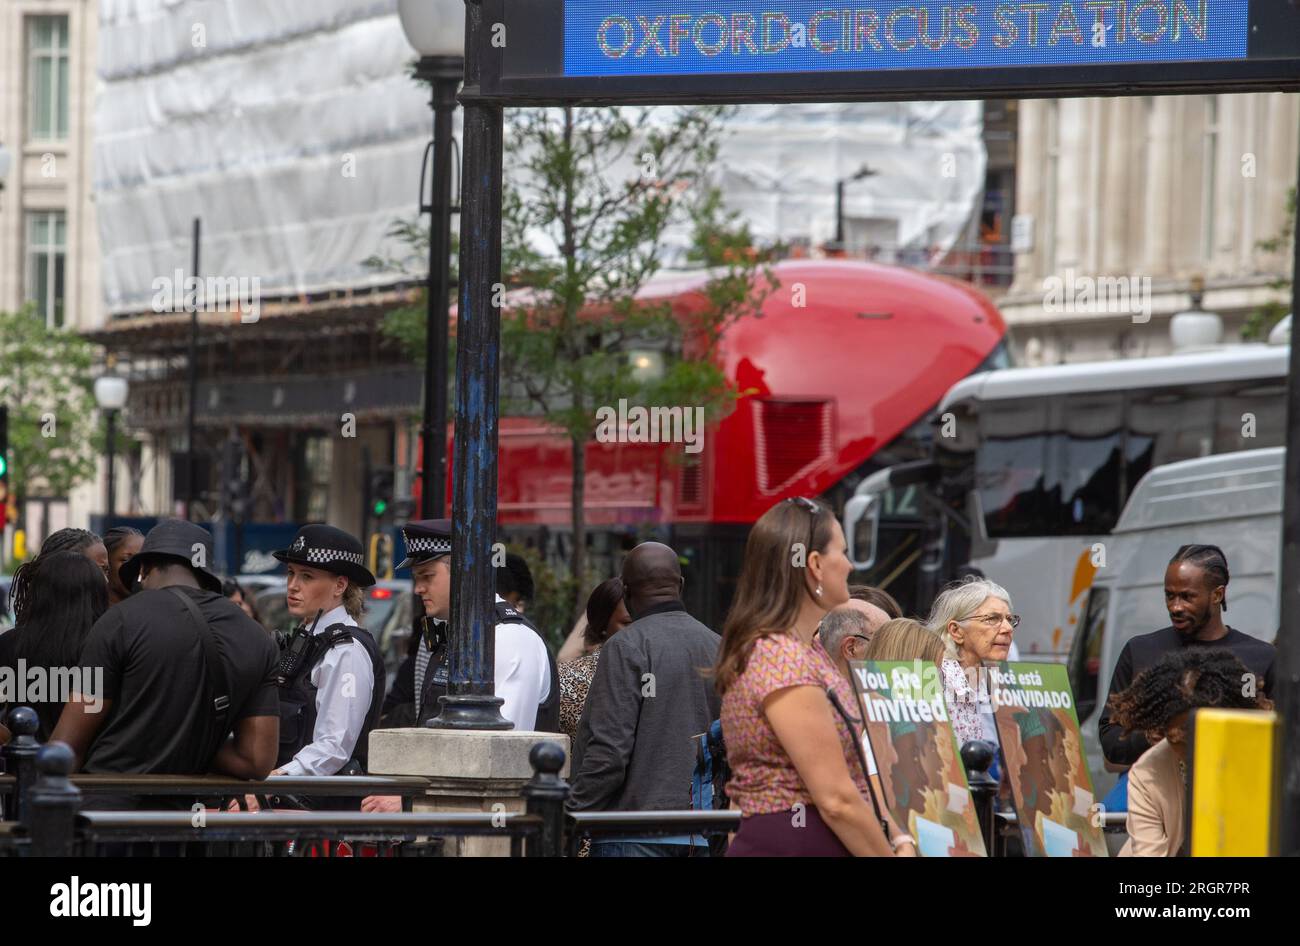 POLIZIA OXFORD STREET © Jeff Moore - gli agenti di polizia pattugliano Oxford Street questo pomeriggio dopo che il dirigente di Marks & Spencer Sacha Berendji ha detto che Oxfor Foto Stock